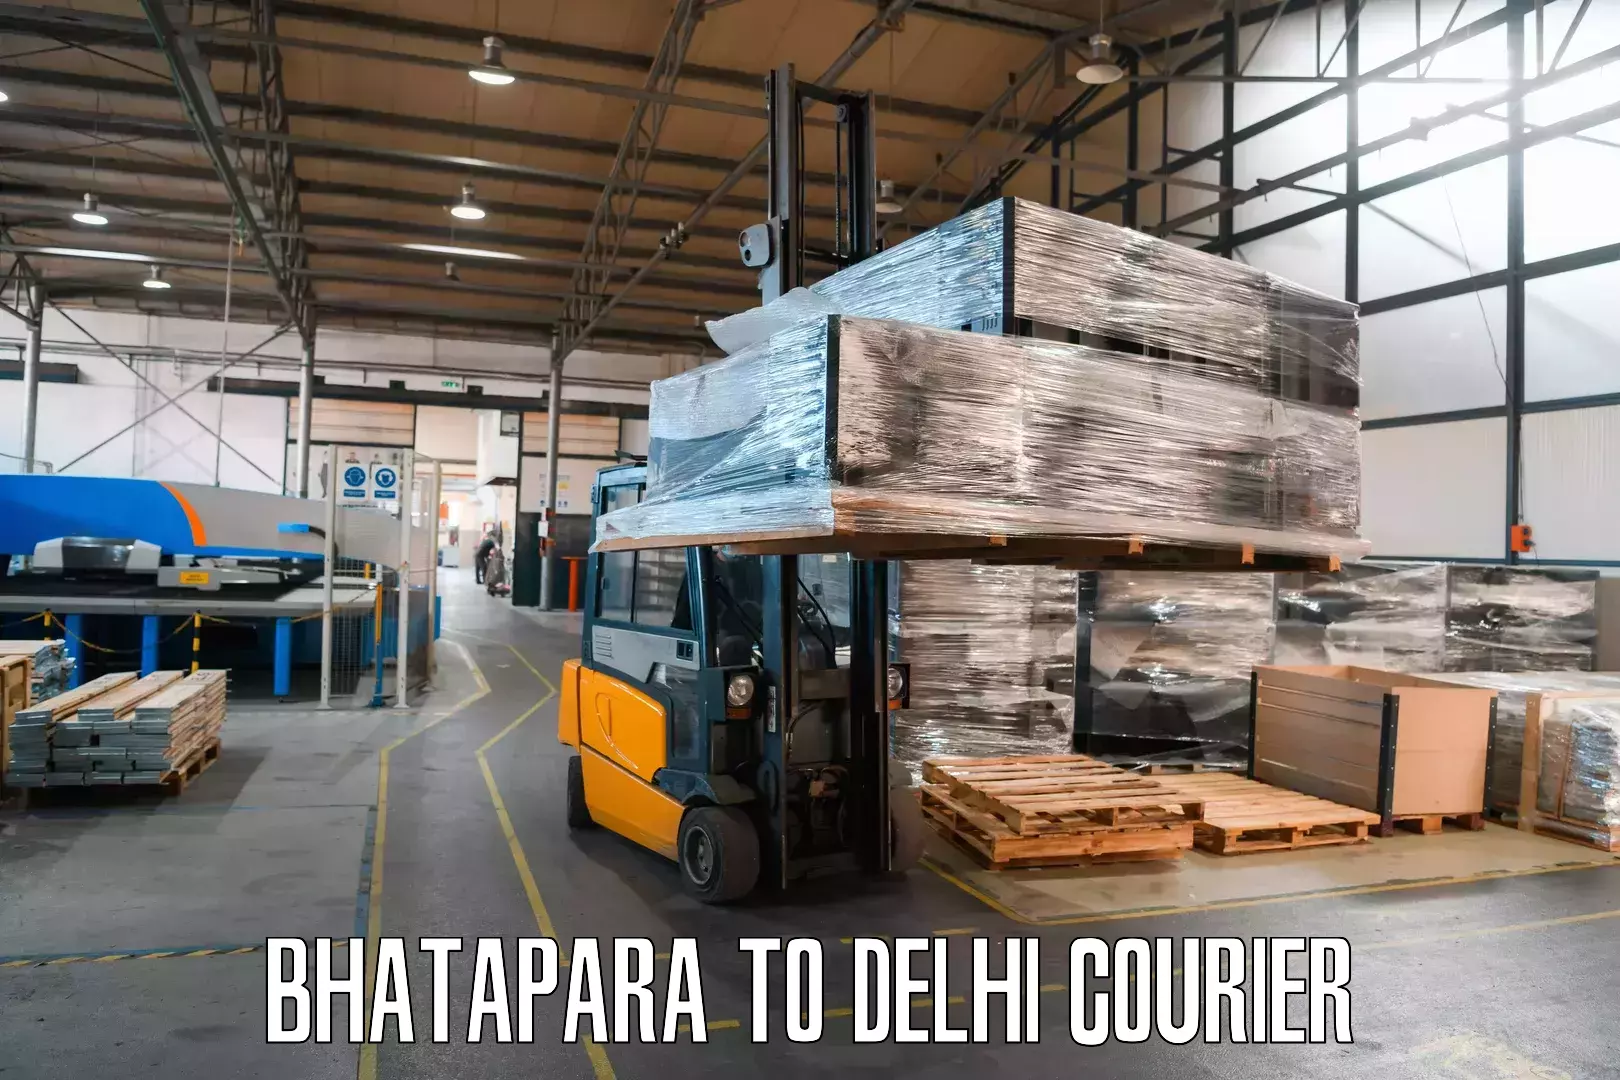 High-capacity parcel service Bhatapara to Ramesh Nagar